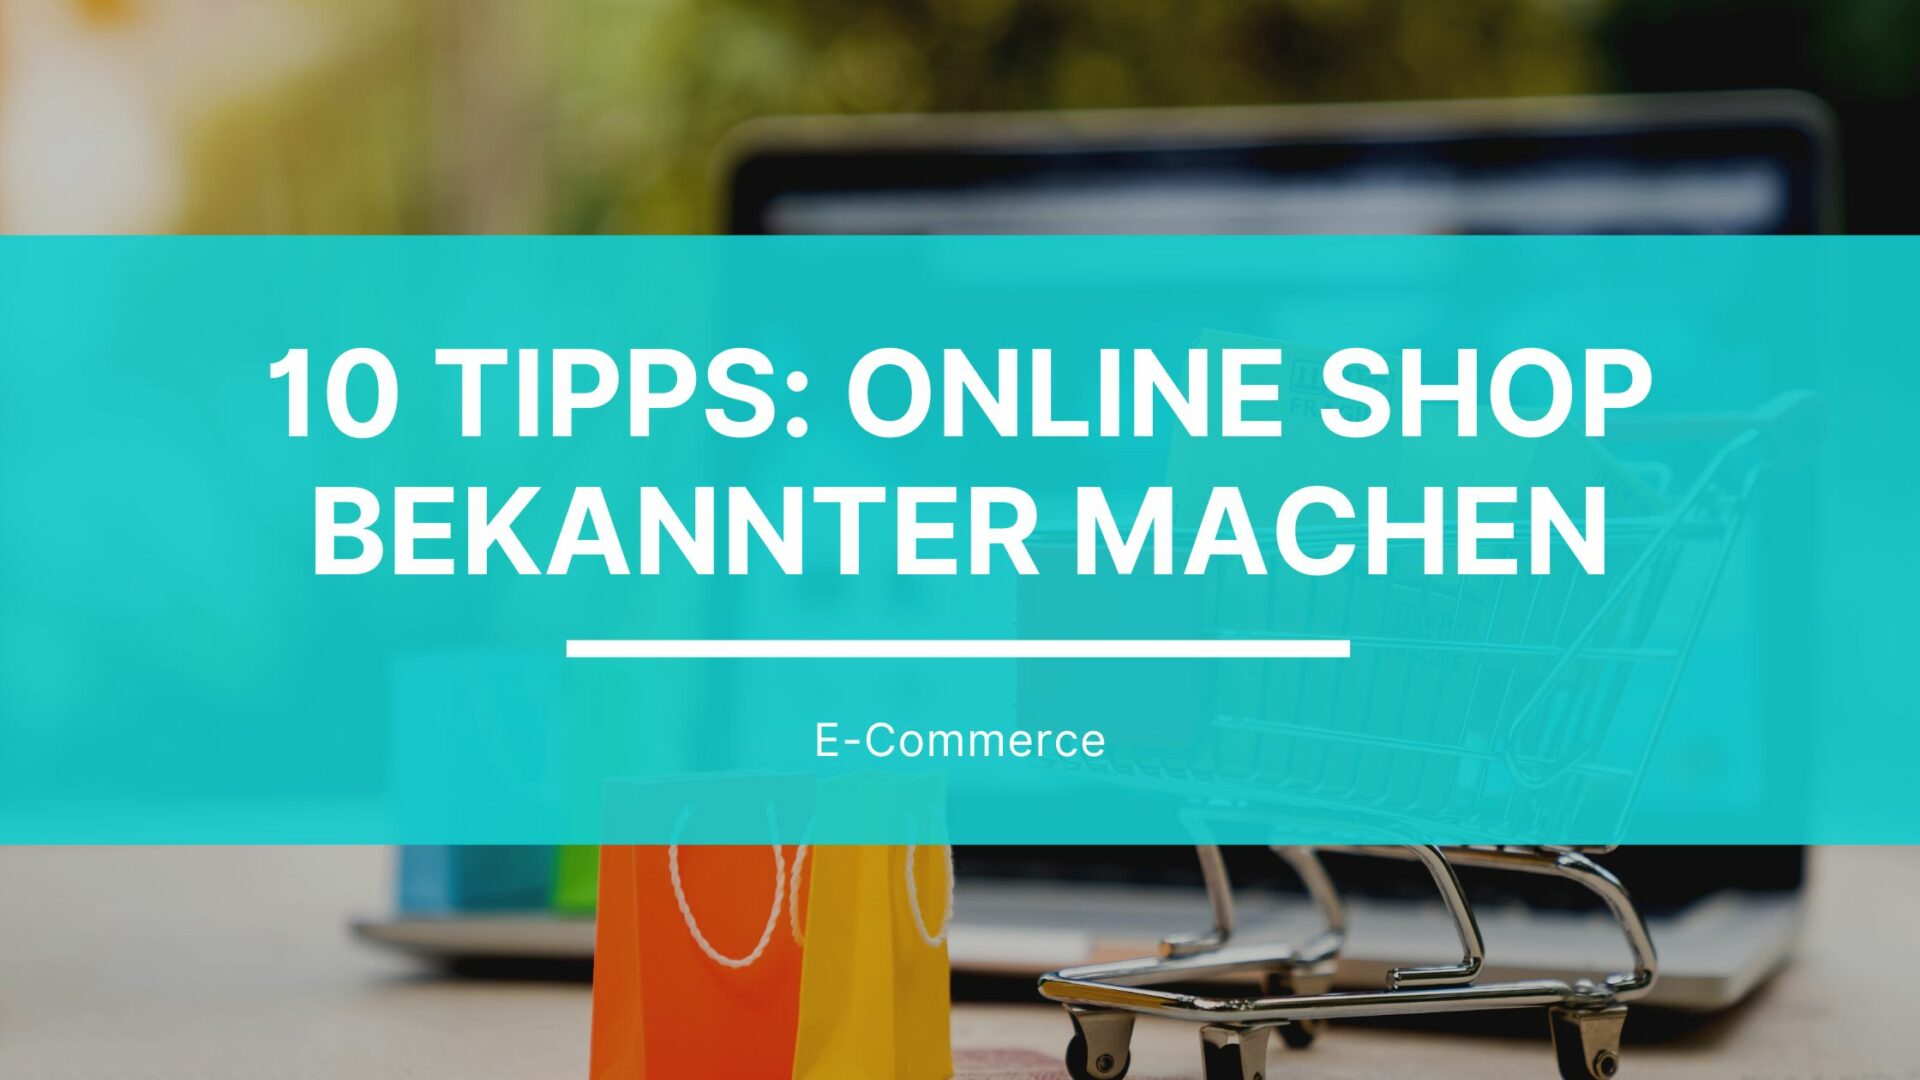 10 tipps online shop bekannter machen